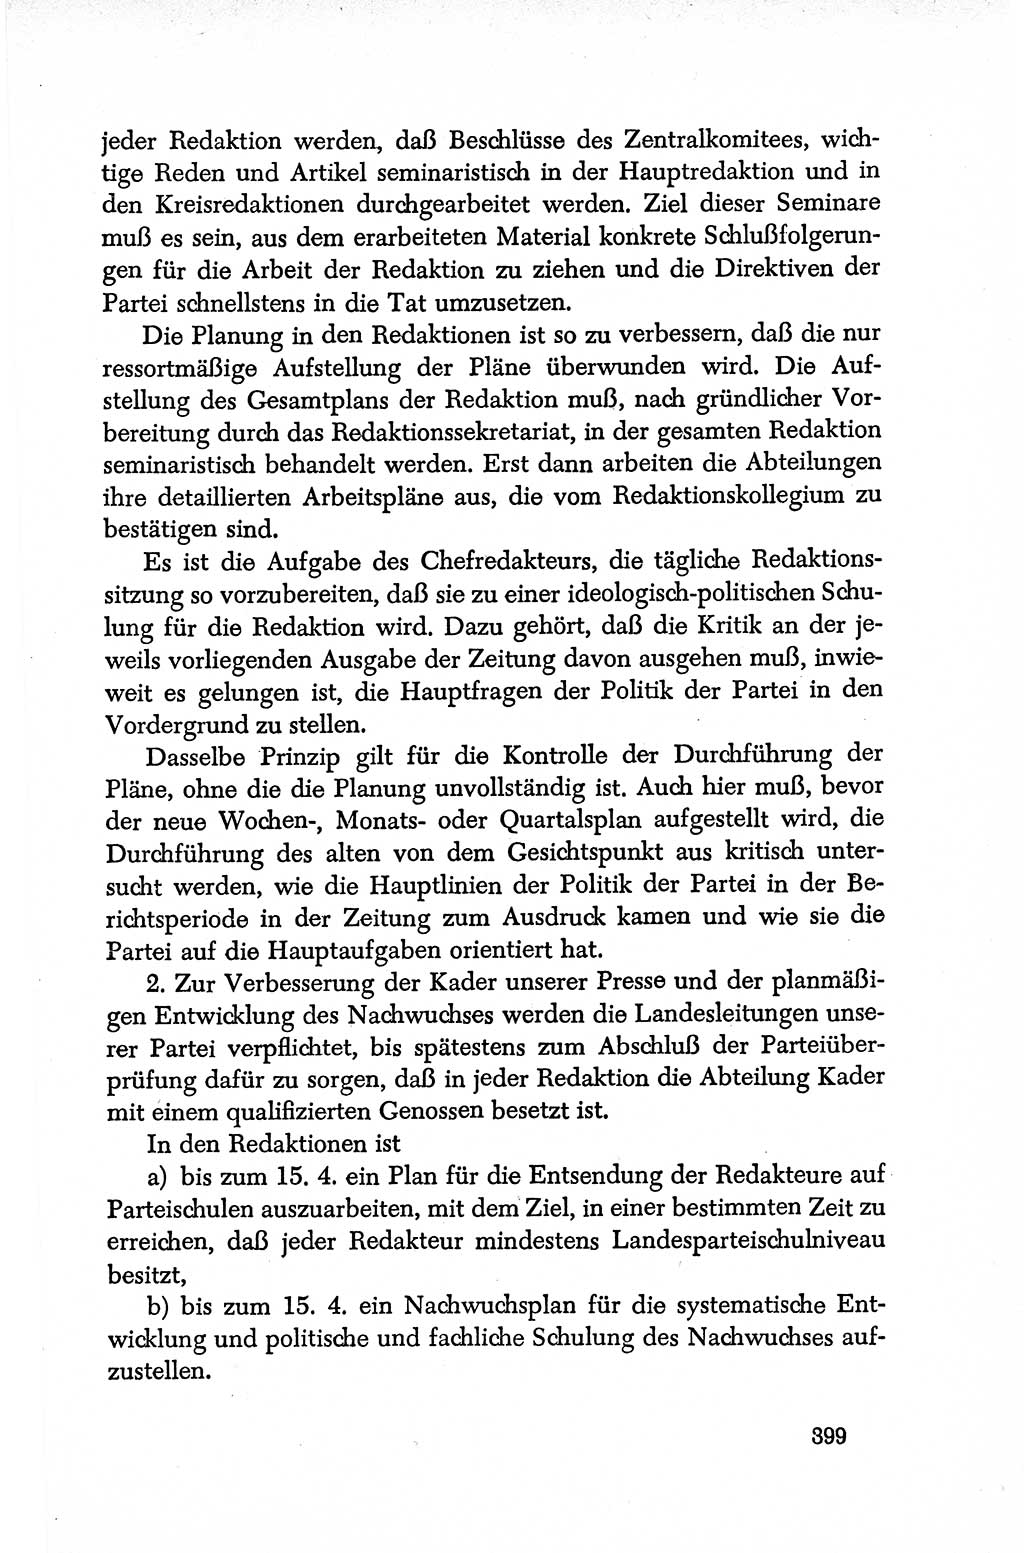 Dokumente der Sozialistischen Einheitspartei Deutschlands (SED) [Deutsche Demokratische Republik (DDR)] 1950-1952, Seite 399 (Dok. SED DDR 1950-1952, S. 399)